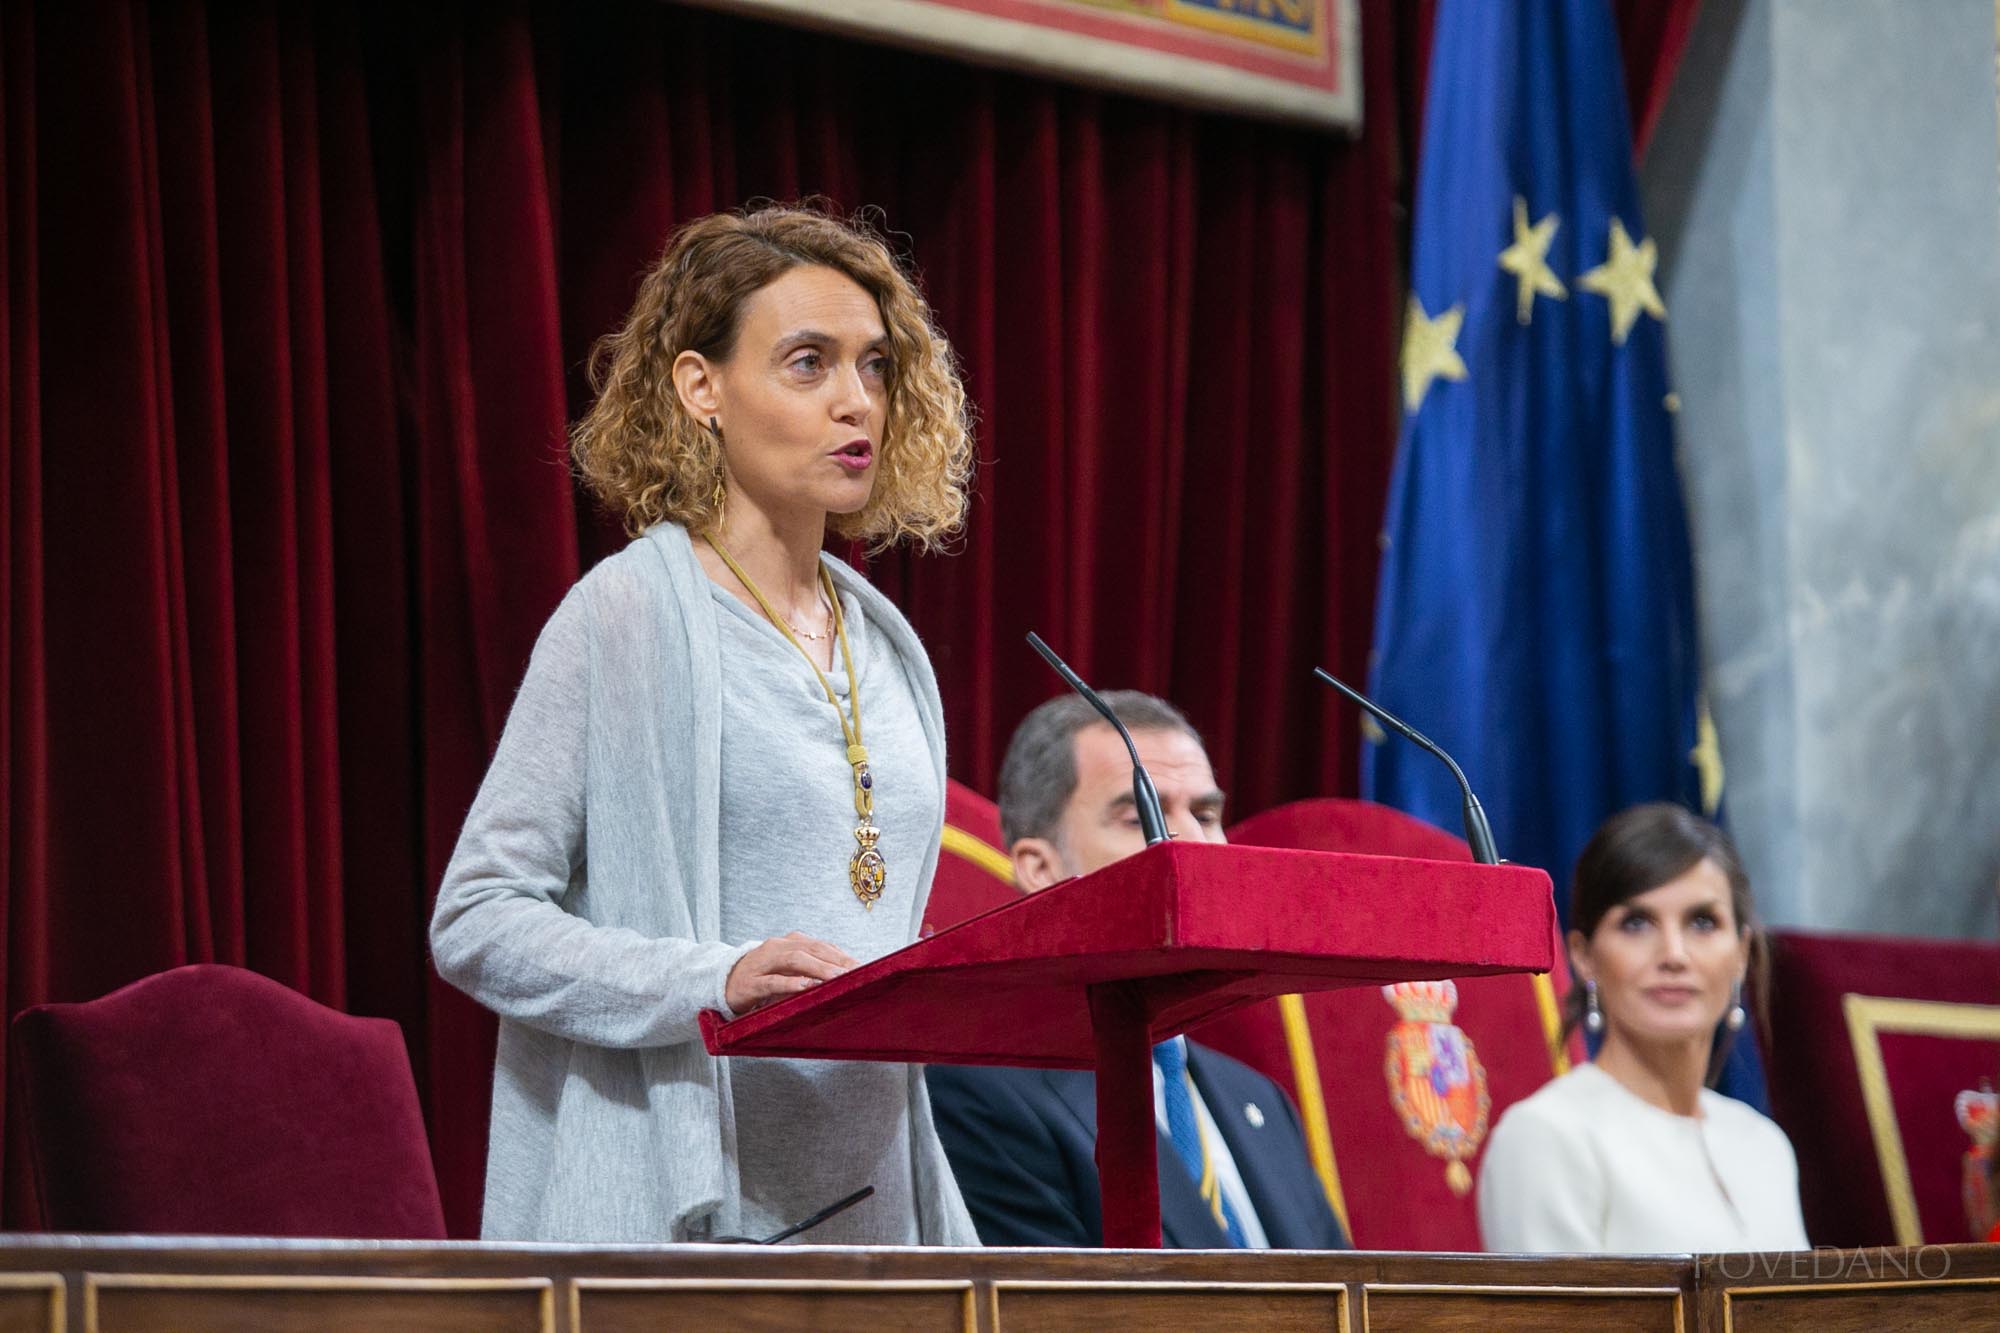 

Discurso de la Presidenta del Congreso de los Diputados Doña Meritxell Batet Lamaña

